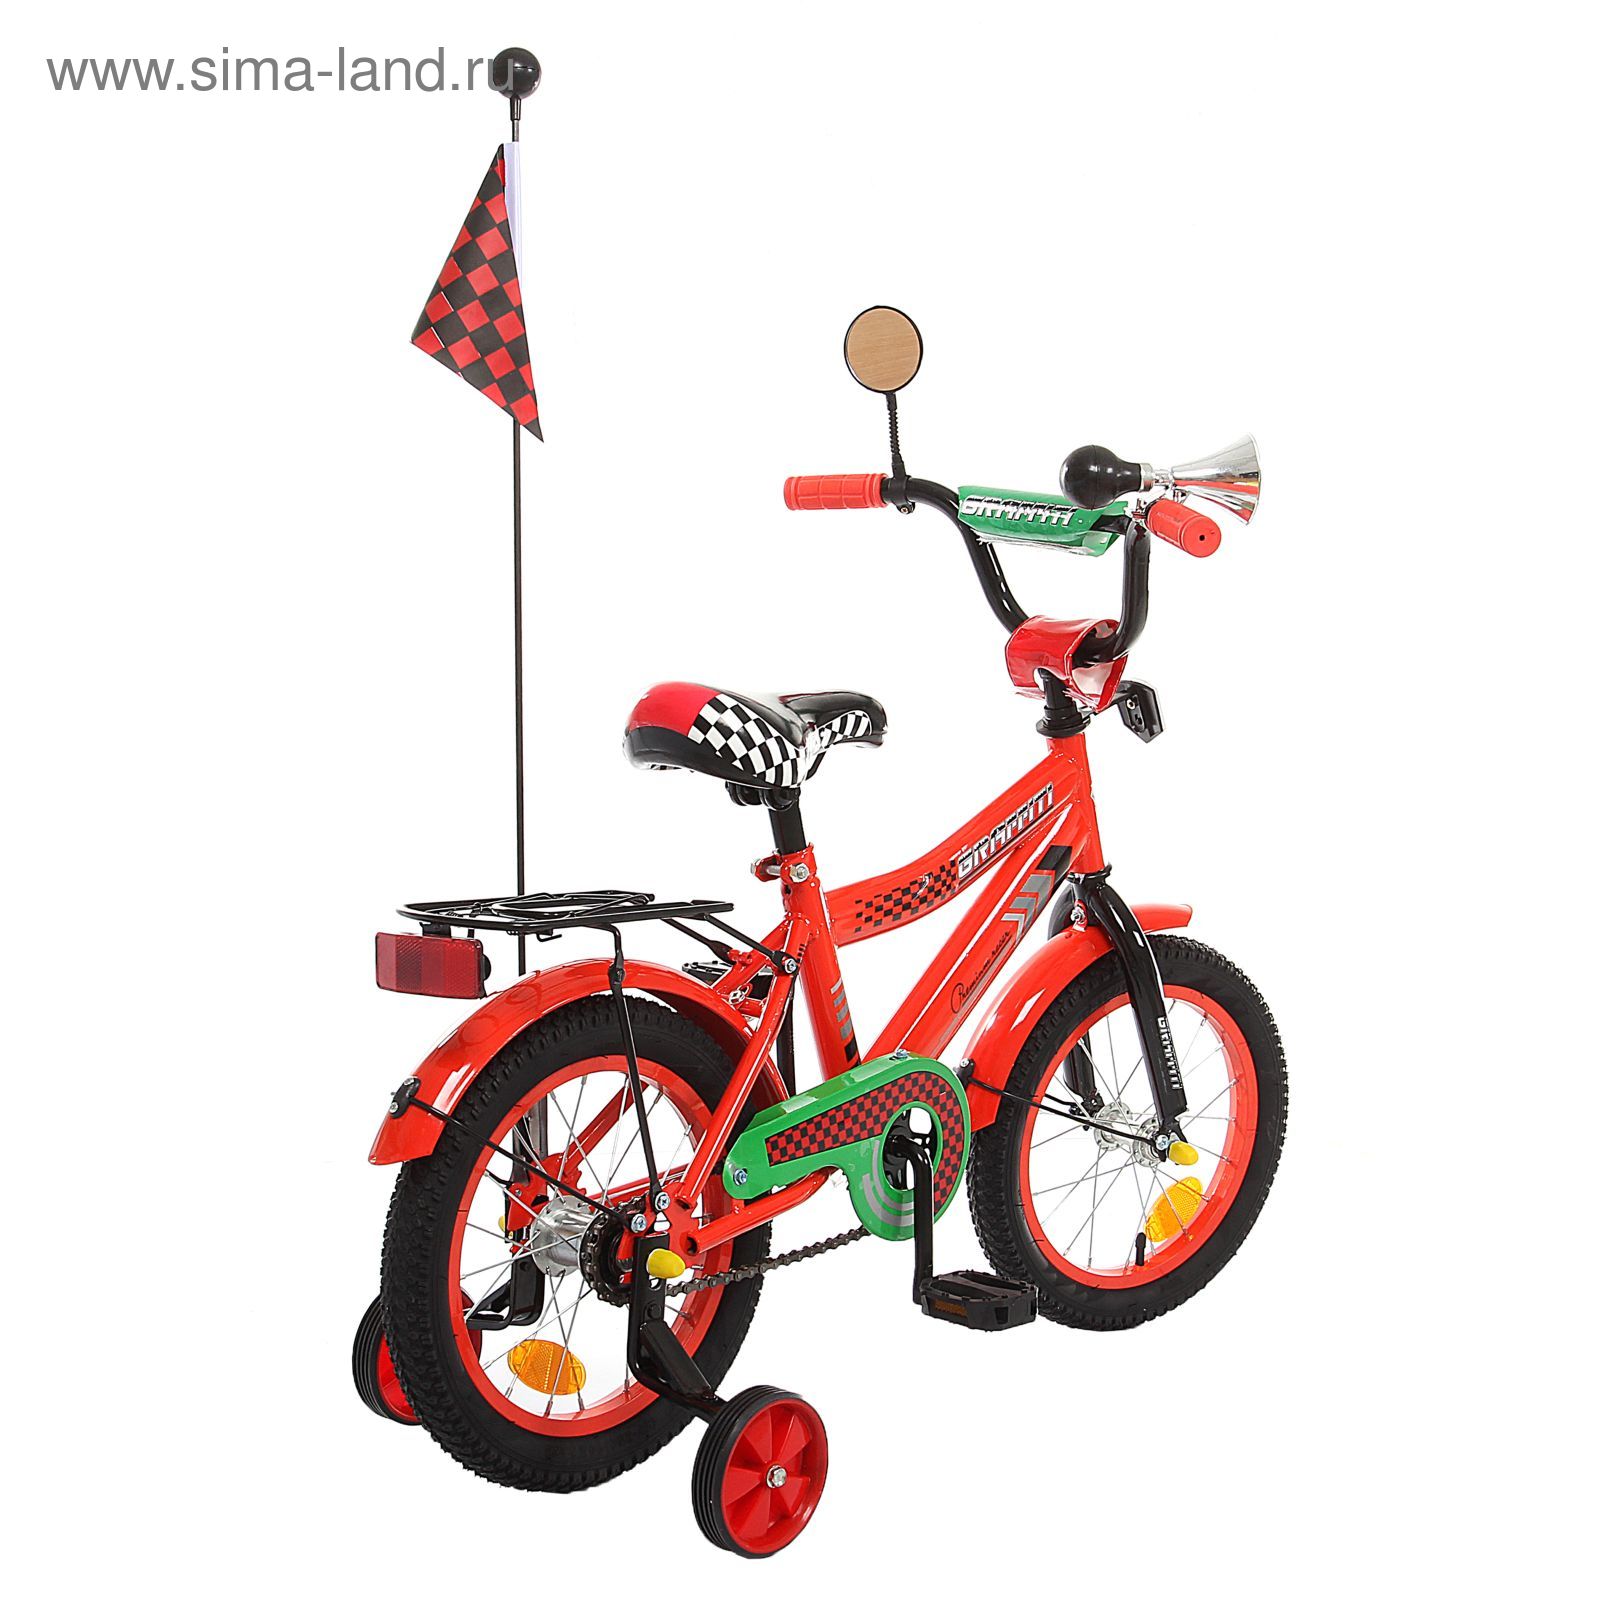 Велосипед 14" GRAFFITI Premium Racer, 2016, цвет красный